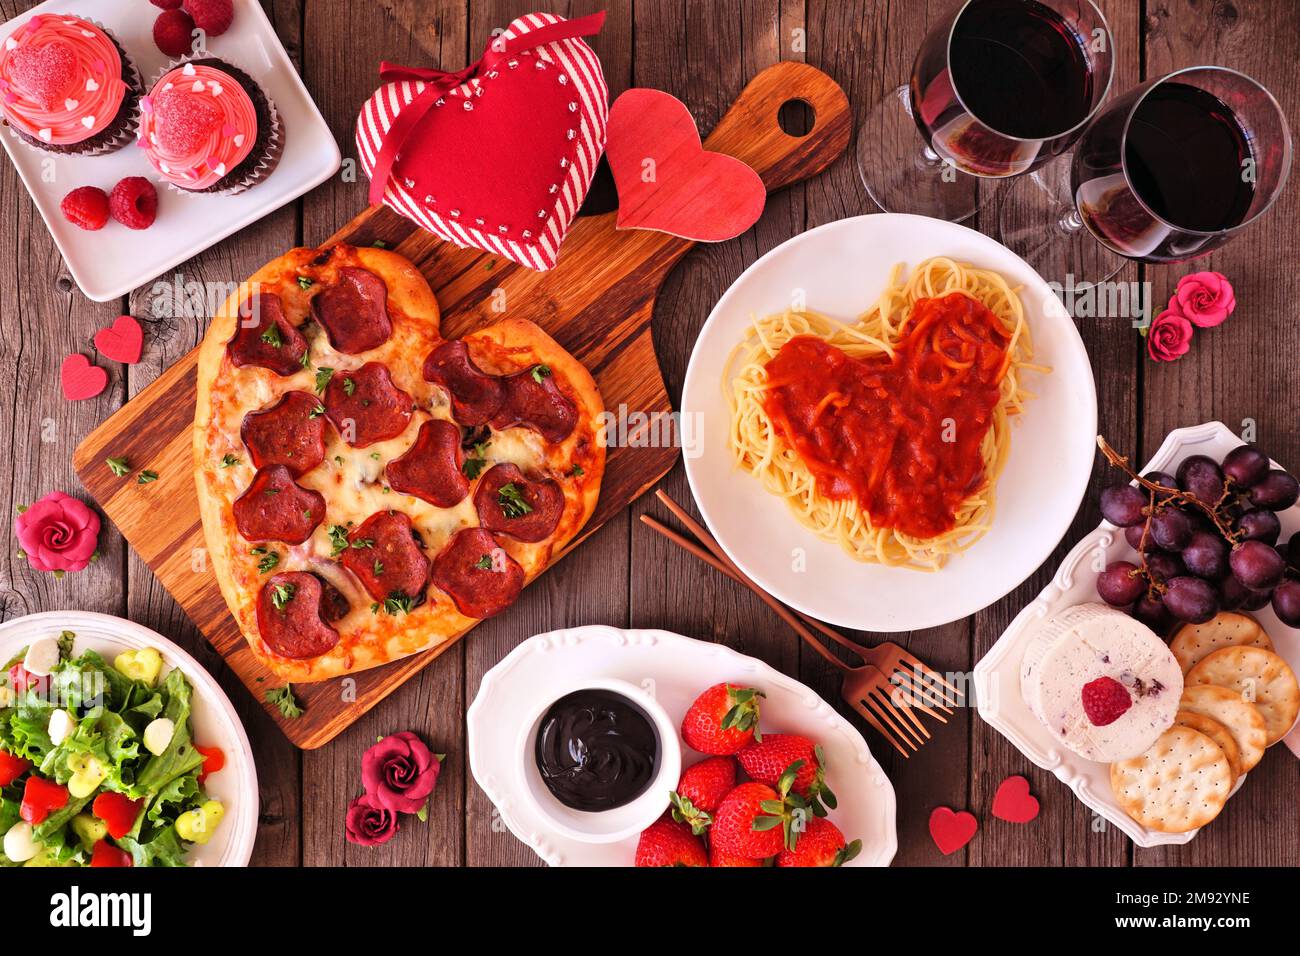 Dîner de Saint-Valentin fait maison. Table avec vue de dessus sur fond de bois sombre. Pizza en forme de cœur, pâtes, vin, assiette de fromage et desserts. Banque D'Images